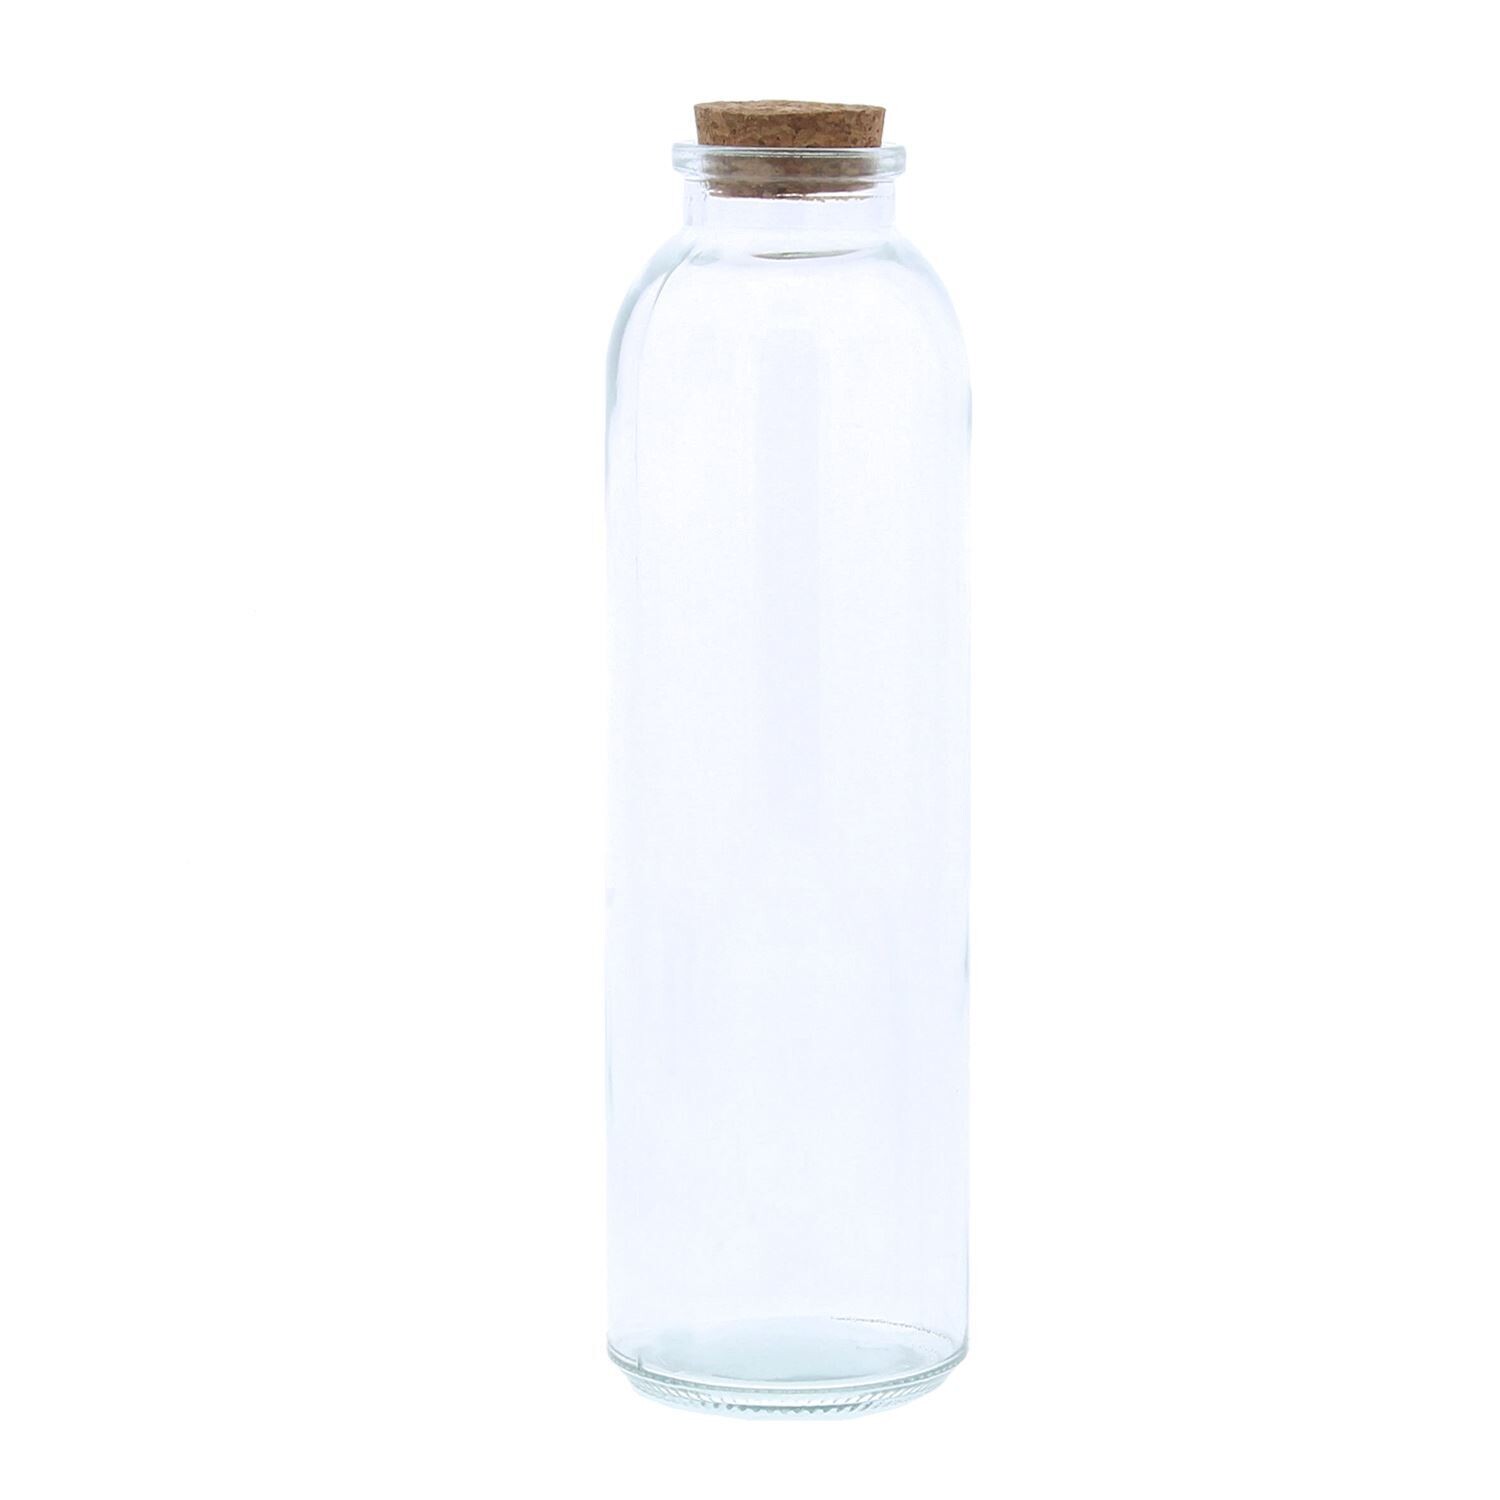 Glazen fles met kruk - 250 ml